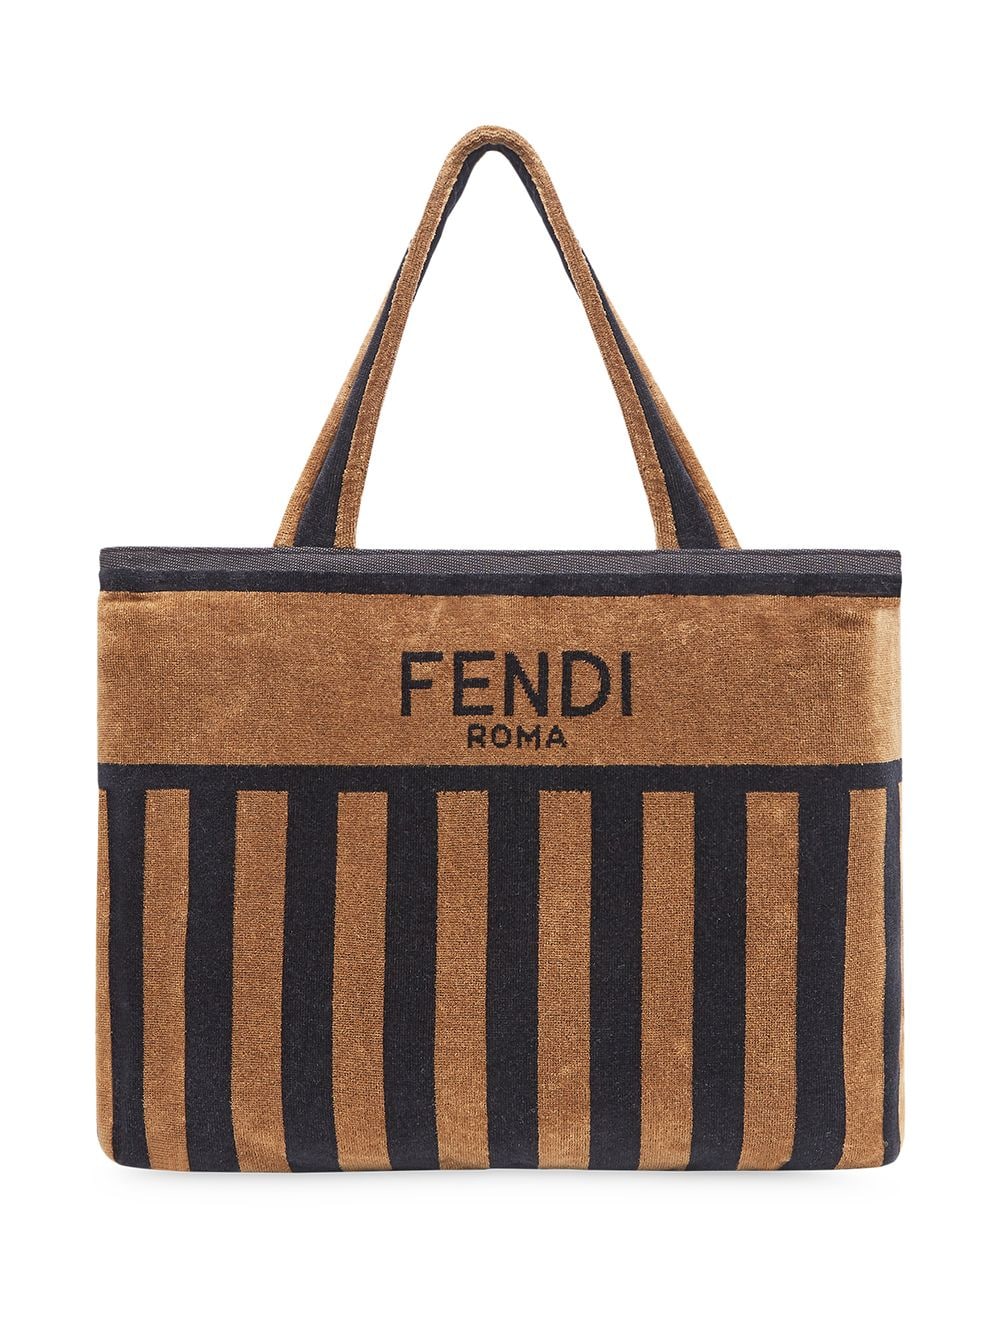 фото Fendi сумка в полоску с логотипом